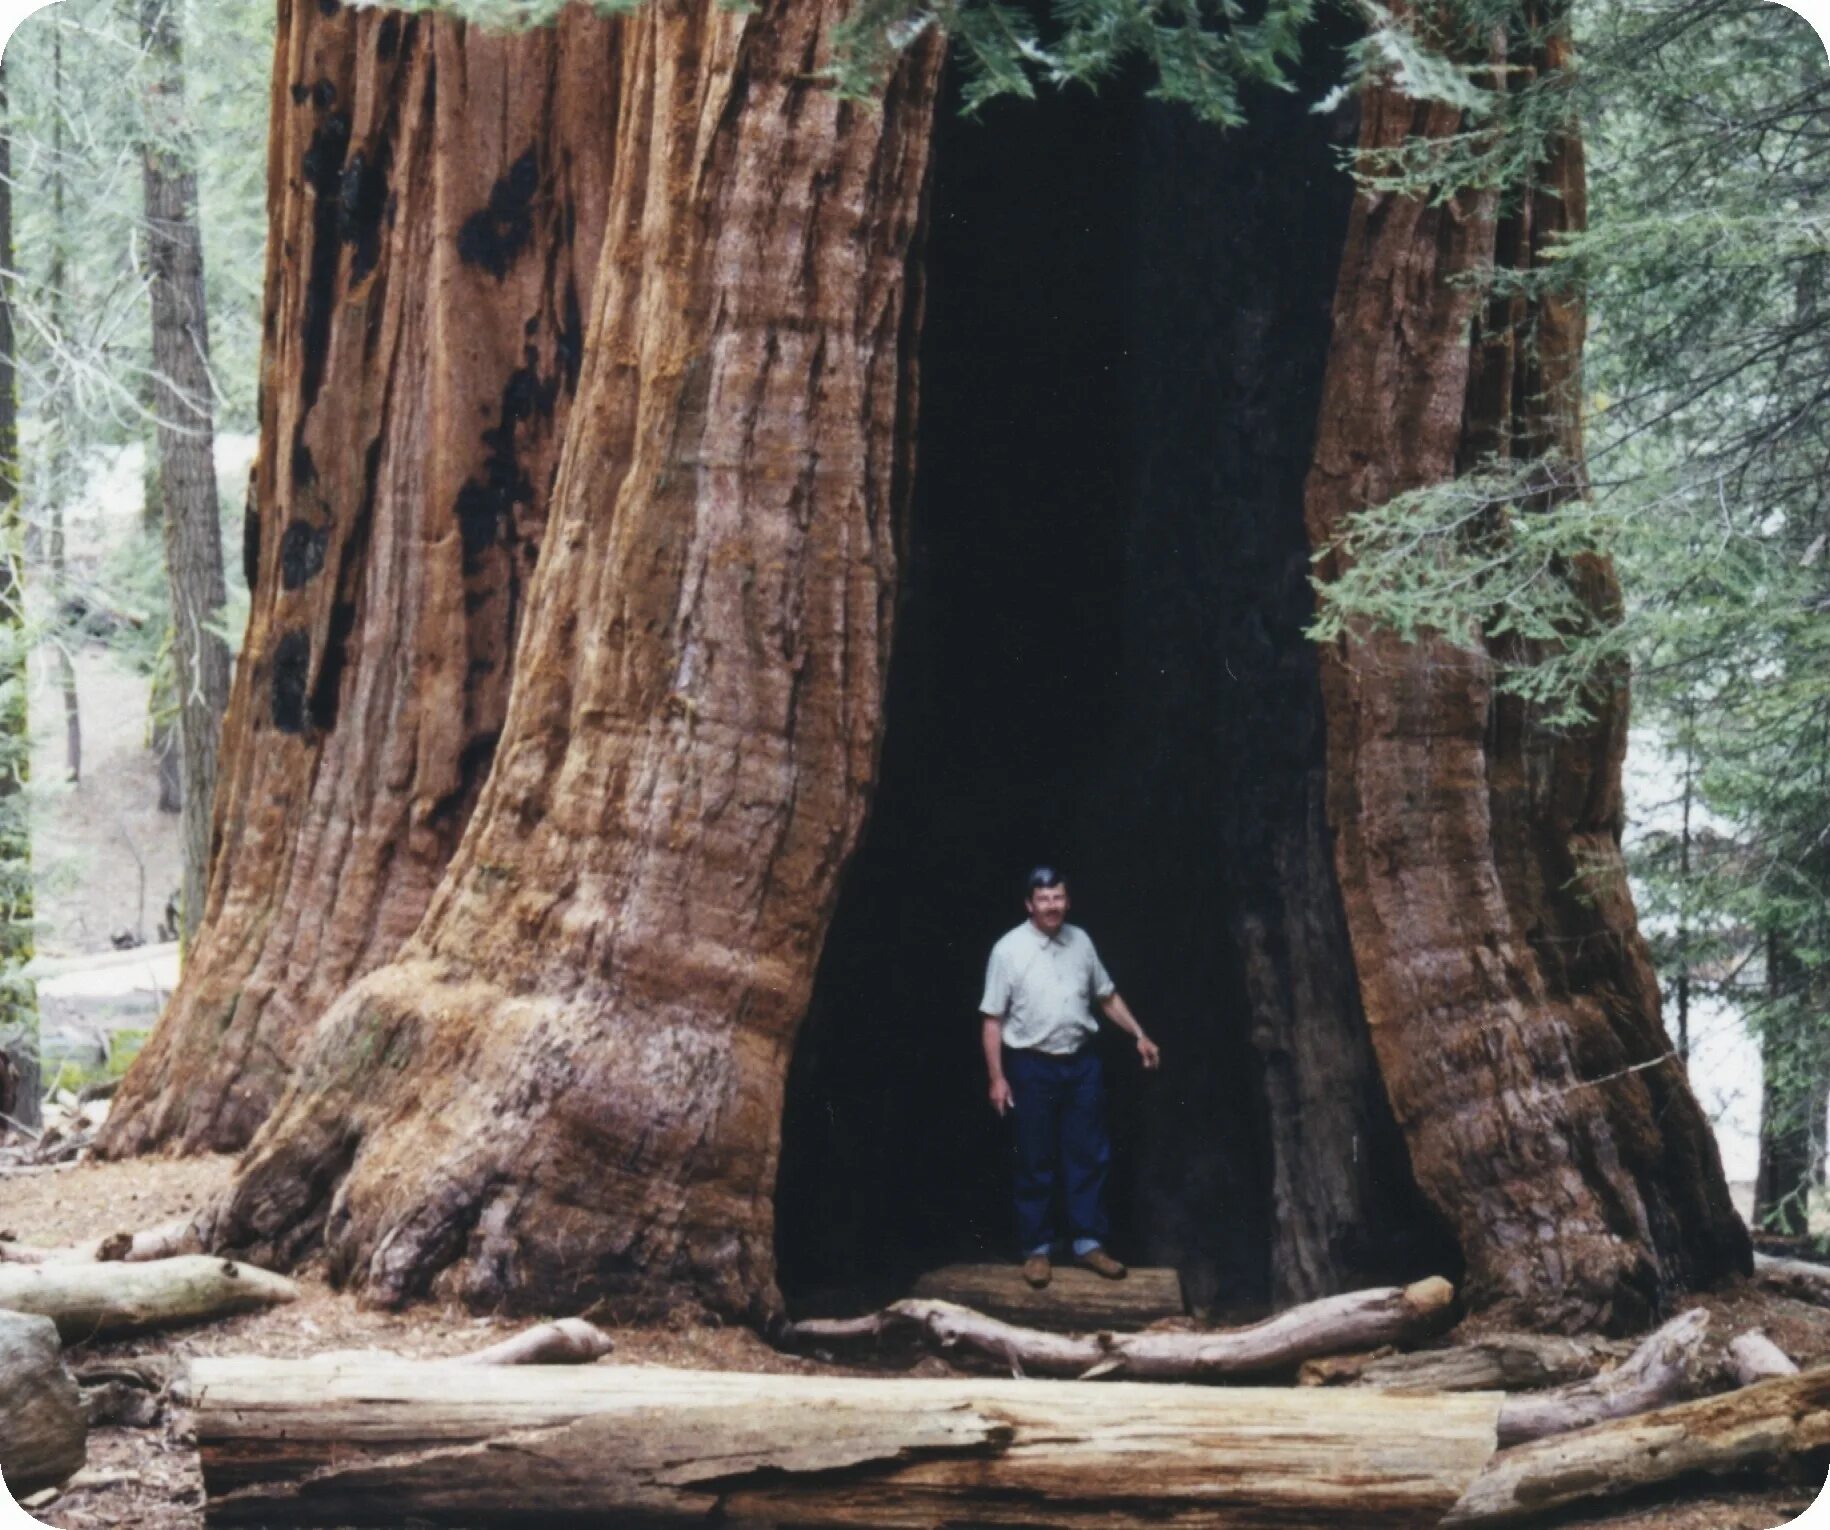 Секвойя дерево. Самое большое дерево в мире Секвойя. Калифорнийская Секвойя Гиперион. Секвойя дерево самое толстое дерево.